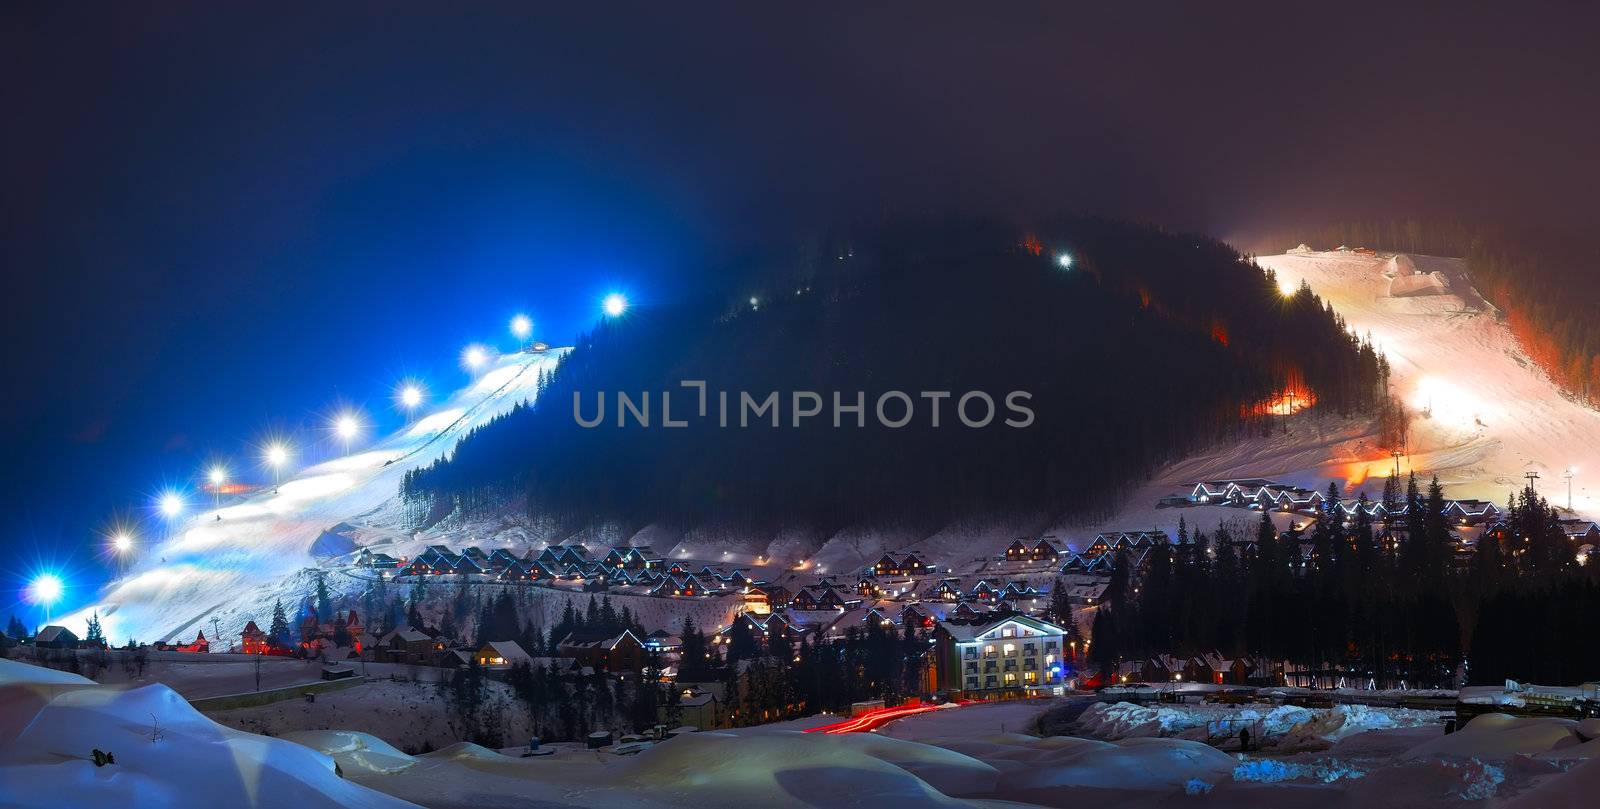 ski resort at night by makspogonii